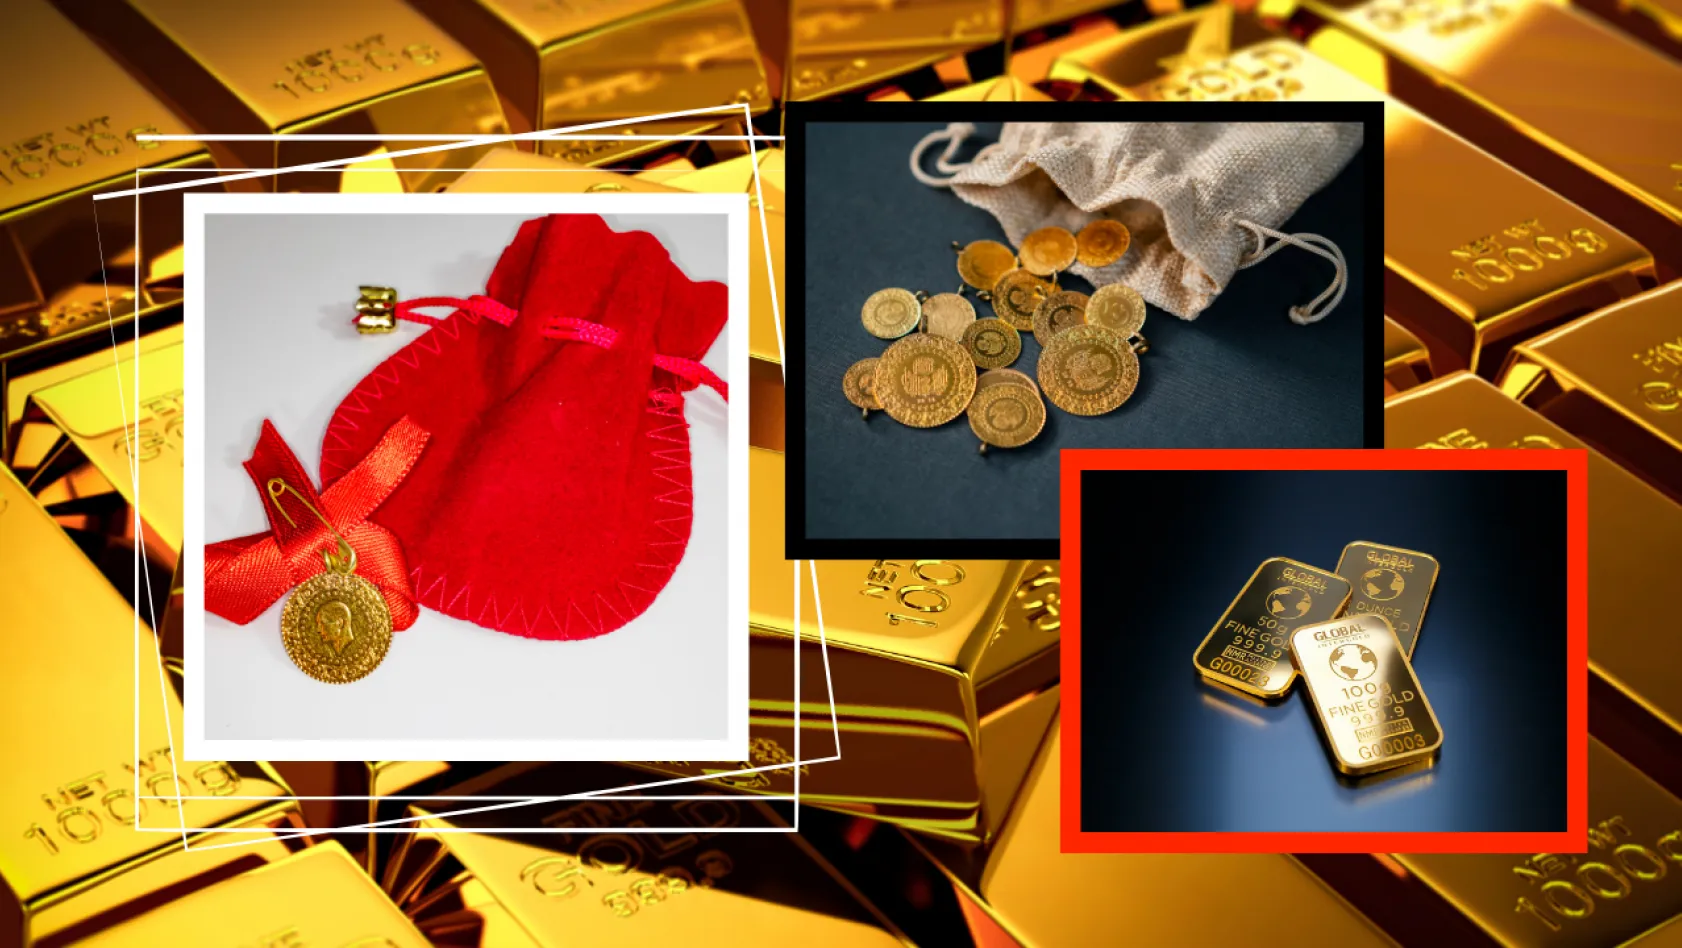 23 Ocak Salı Malatya'da altın fiyatları: Gram altın 2 bin TL'yi geçti!